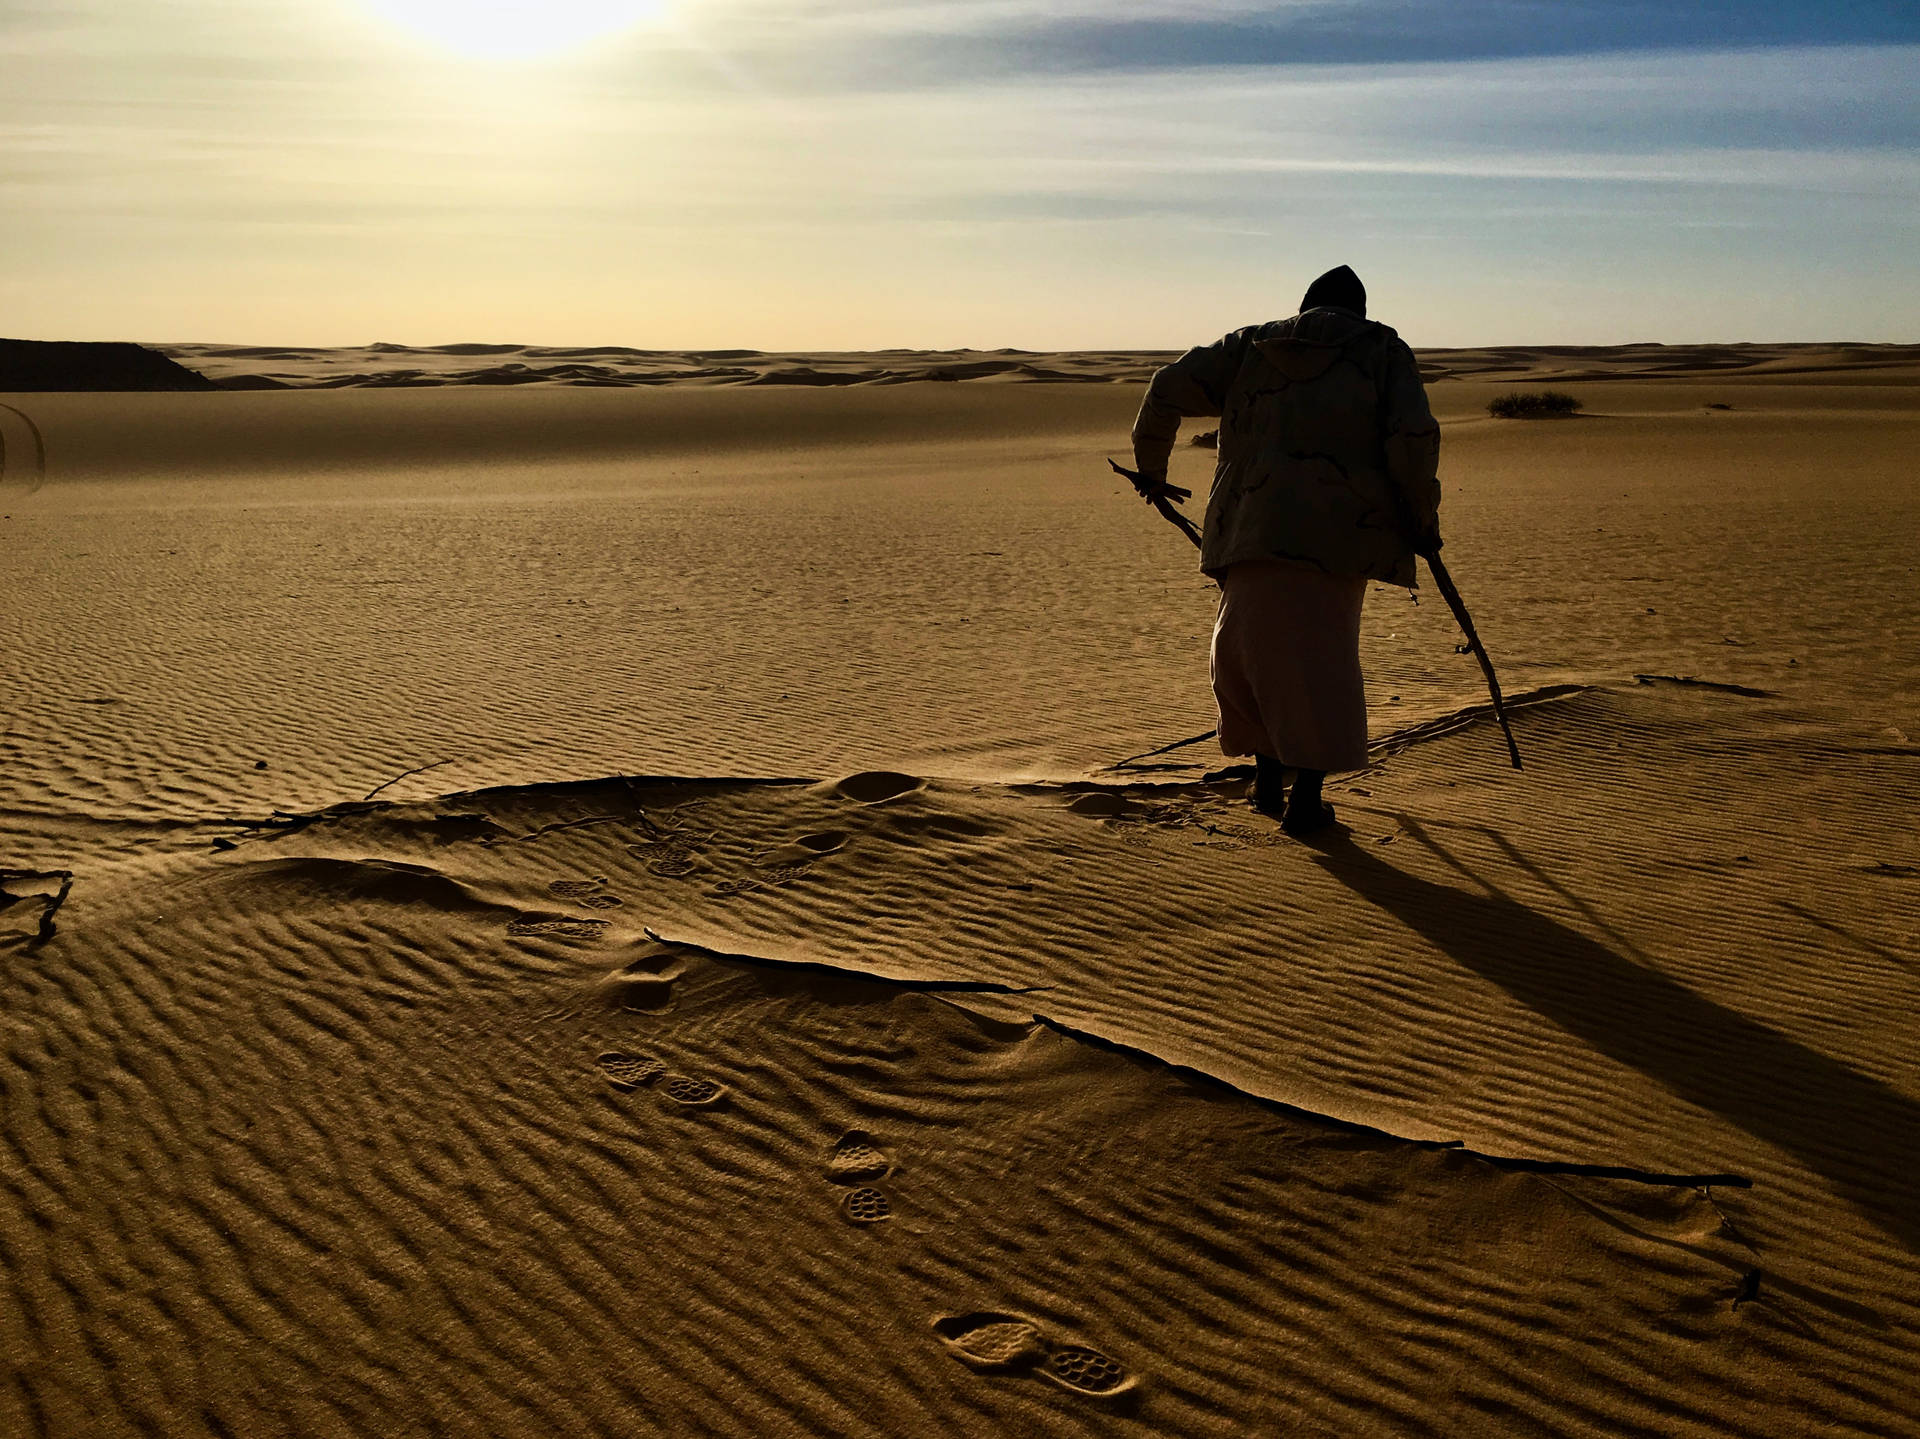 Man On A Desert Libya Wallpaper